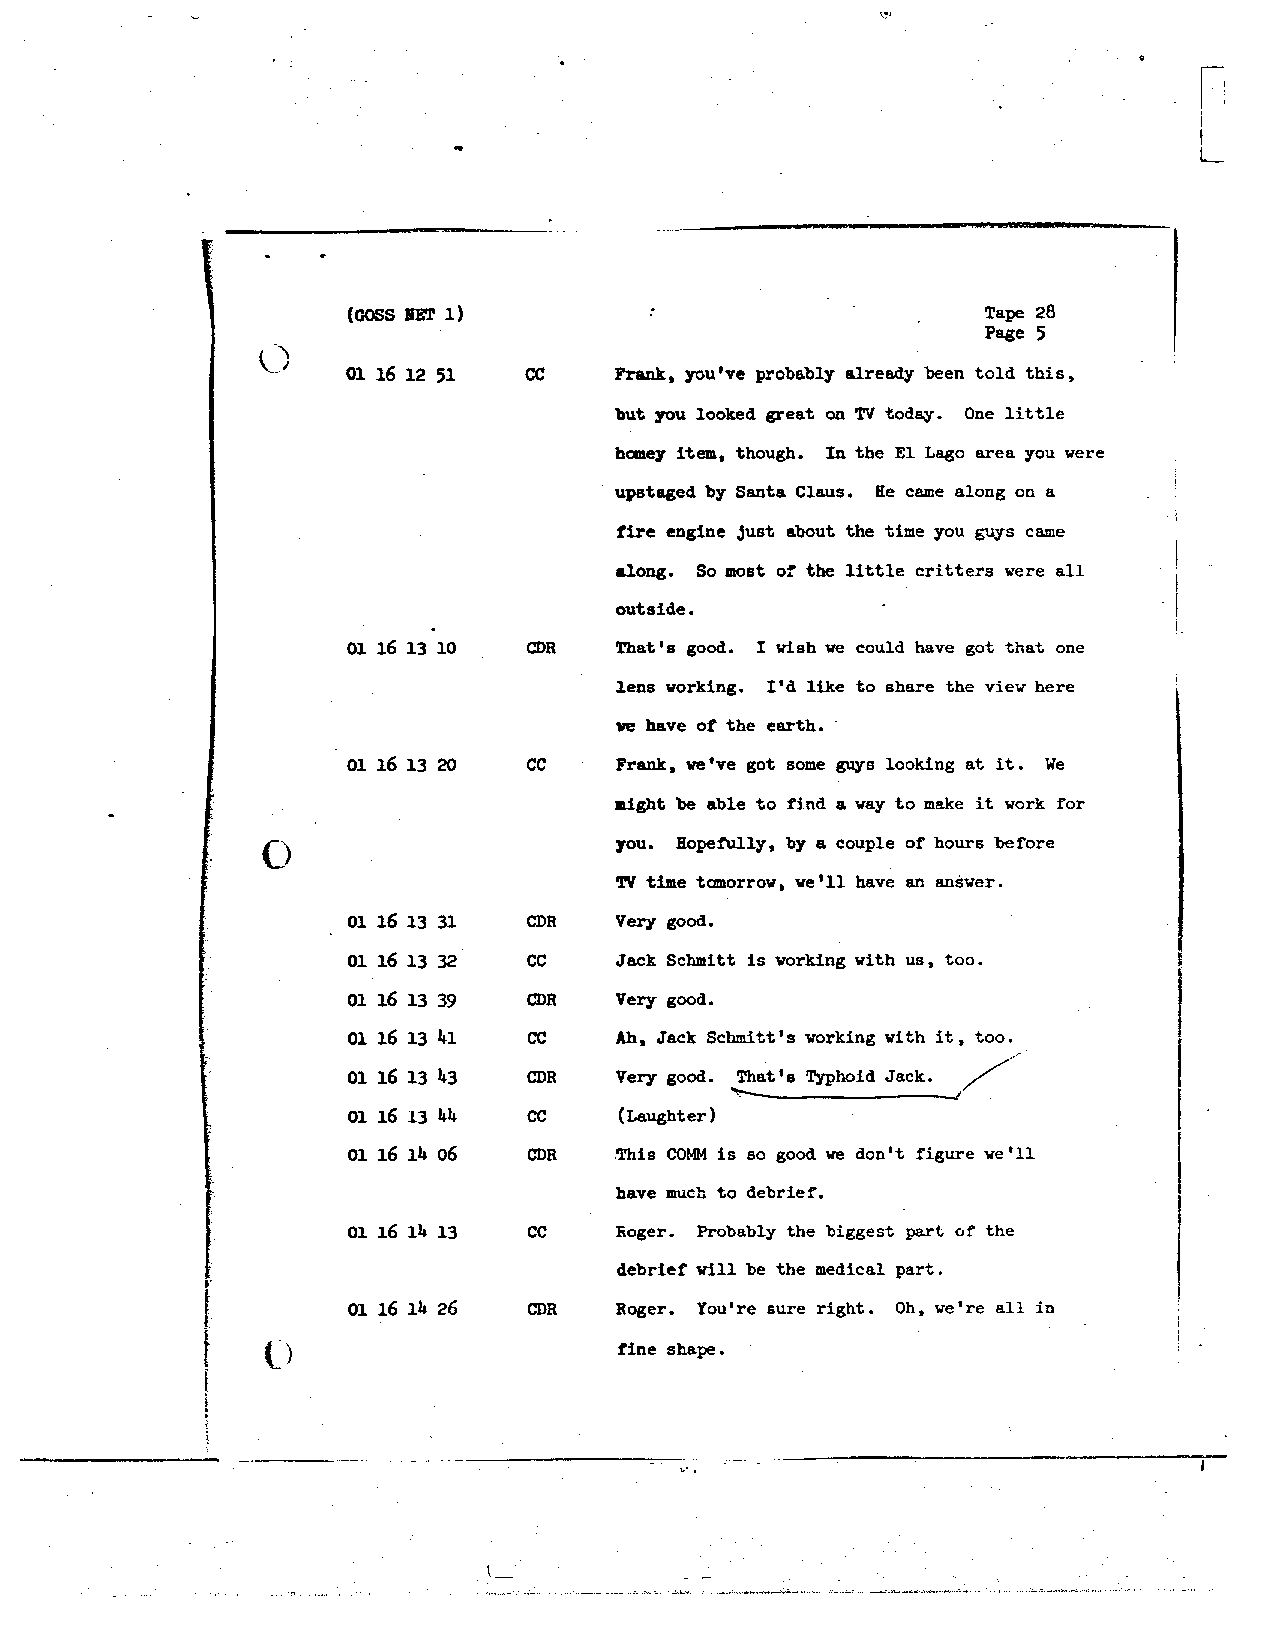 Page 226 of Apollo 8’s original transcript